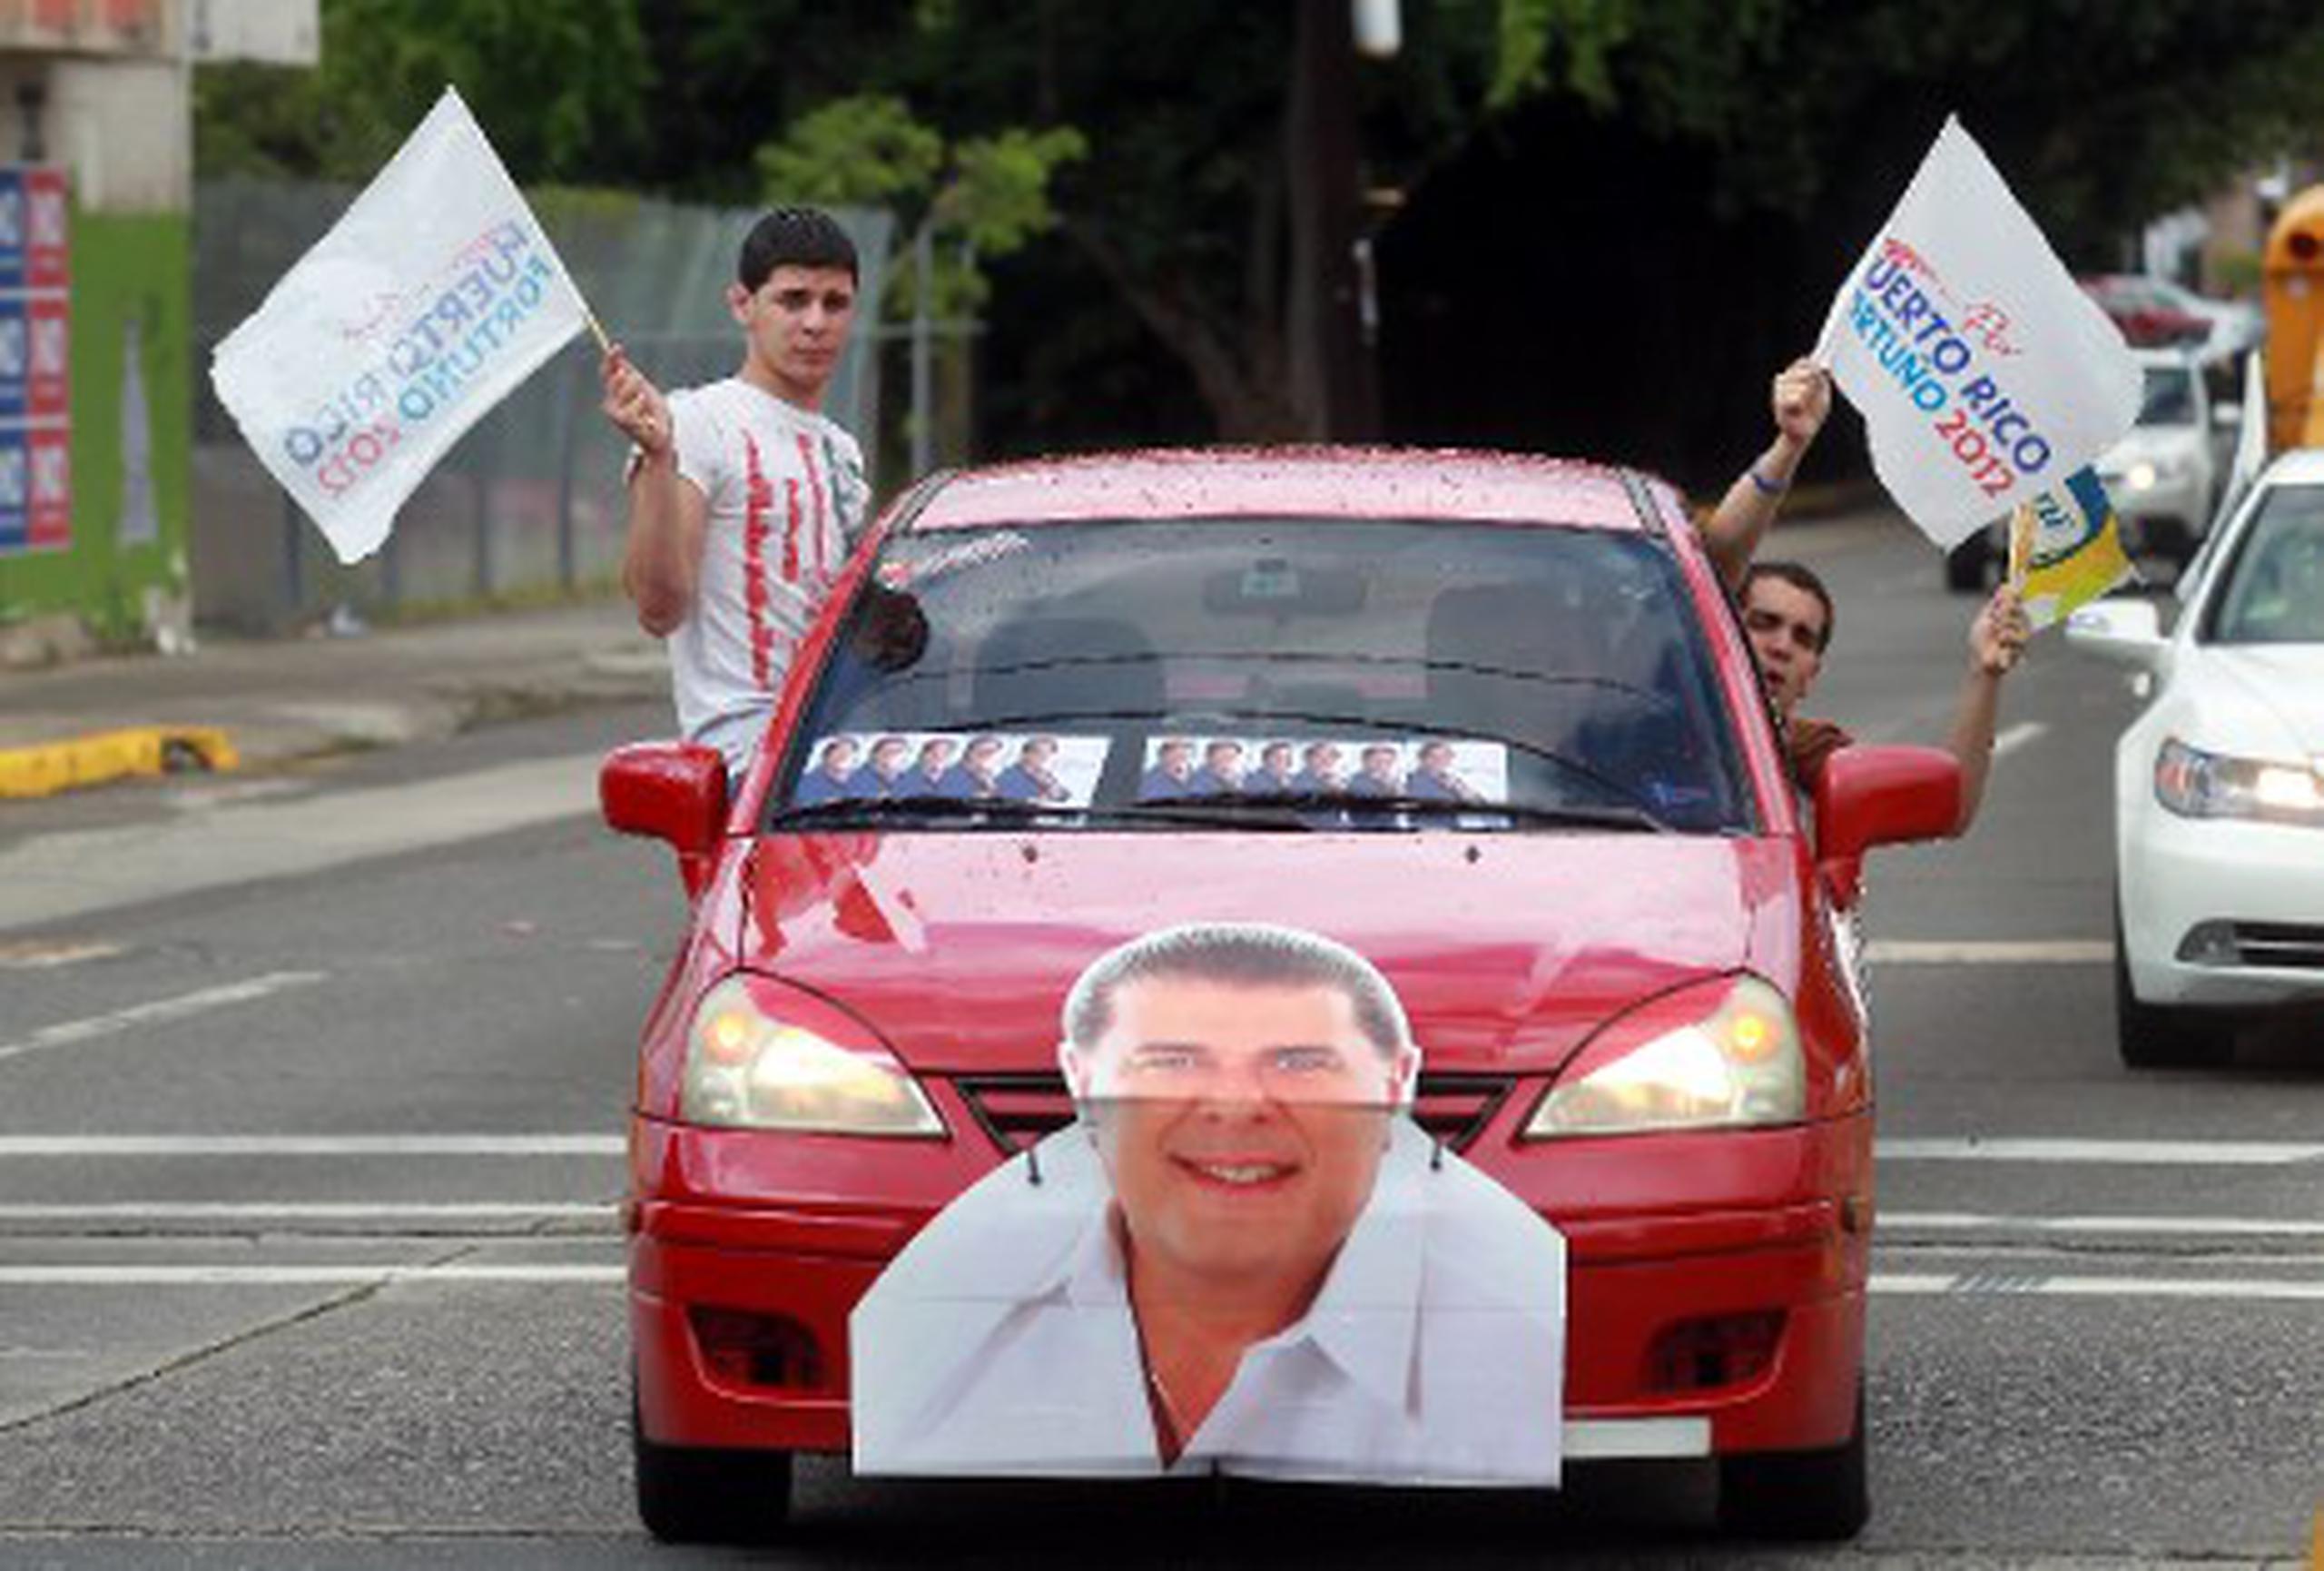 Ya algunos seguidores del alcalde Jorge Santini están llegando al comité de campaña en Hato Rey. (vanessa.serra@gfrmedia.com)
